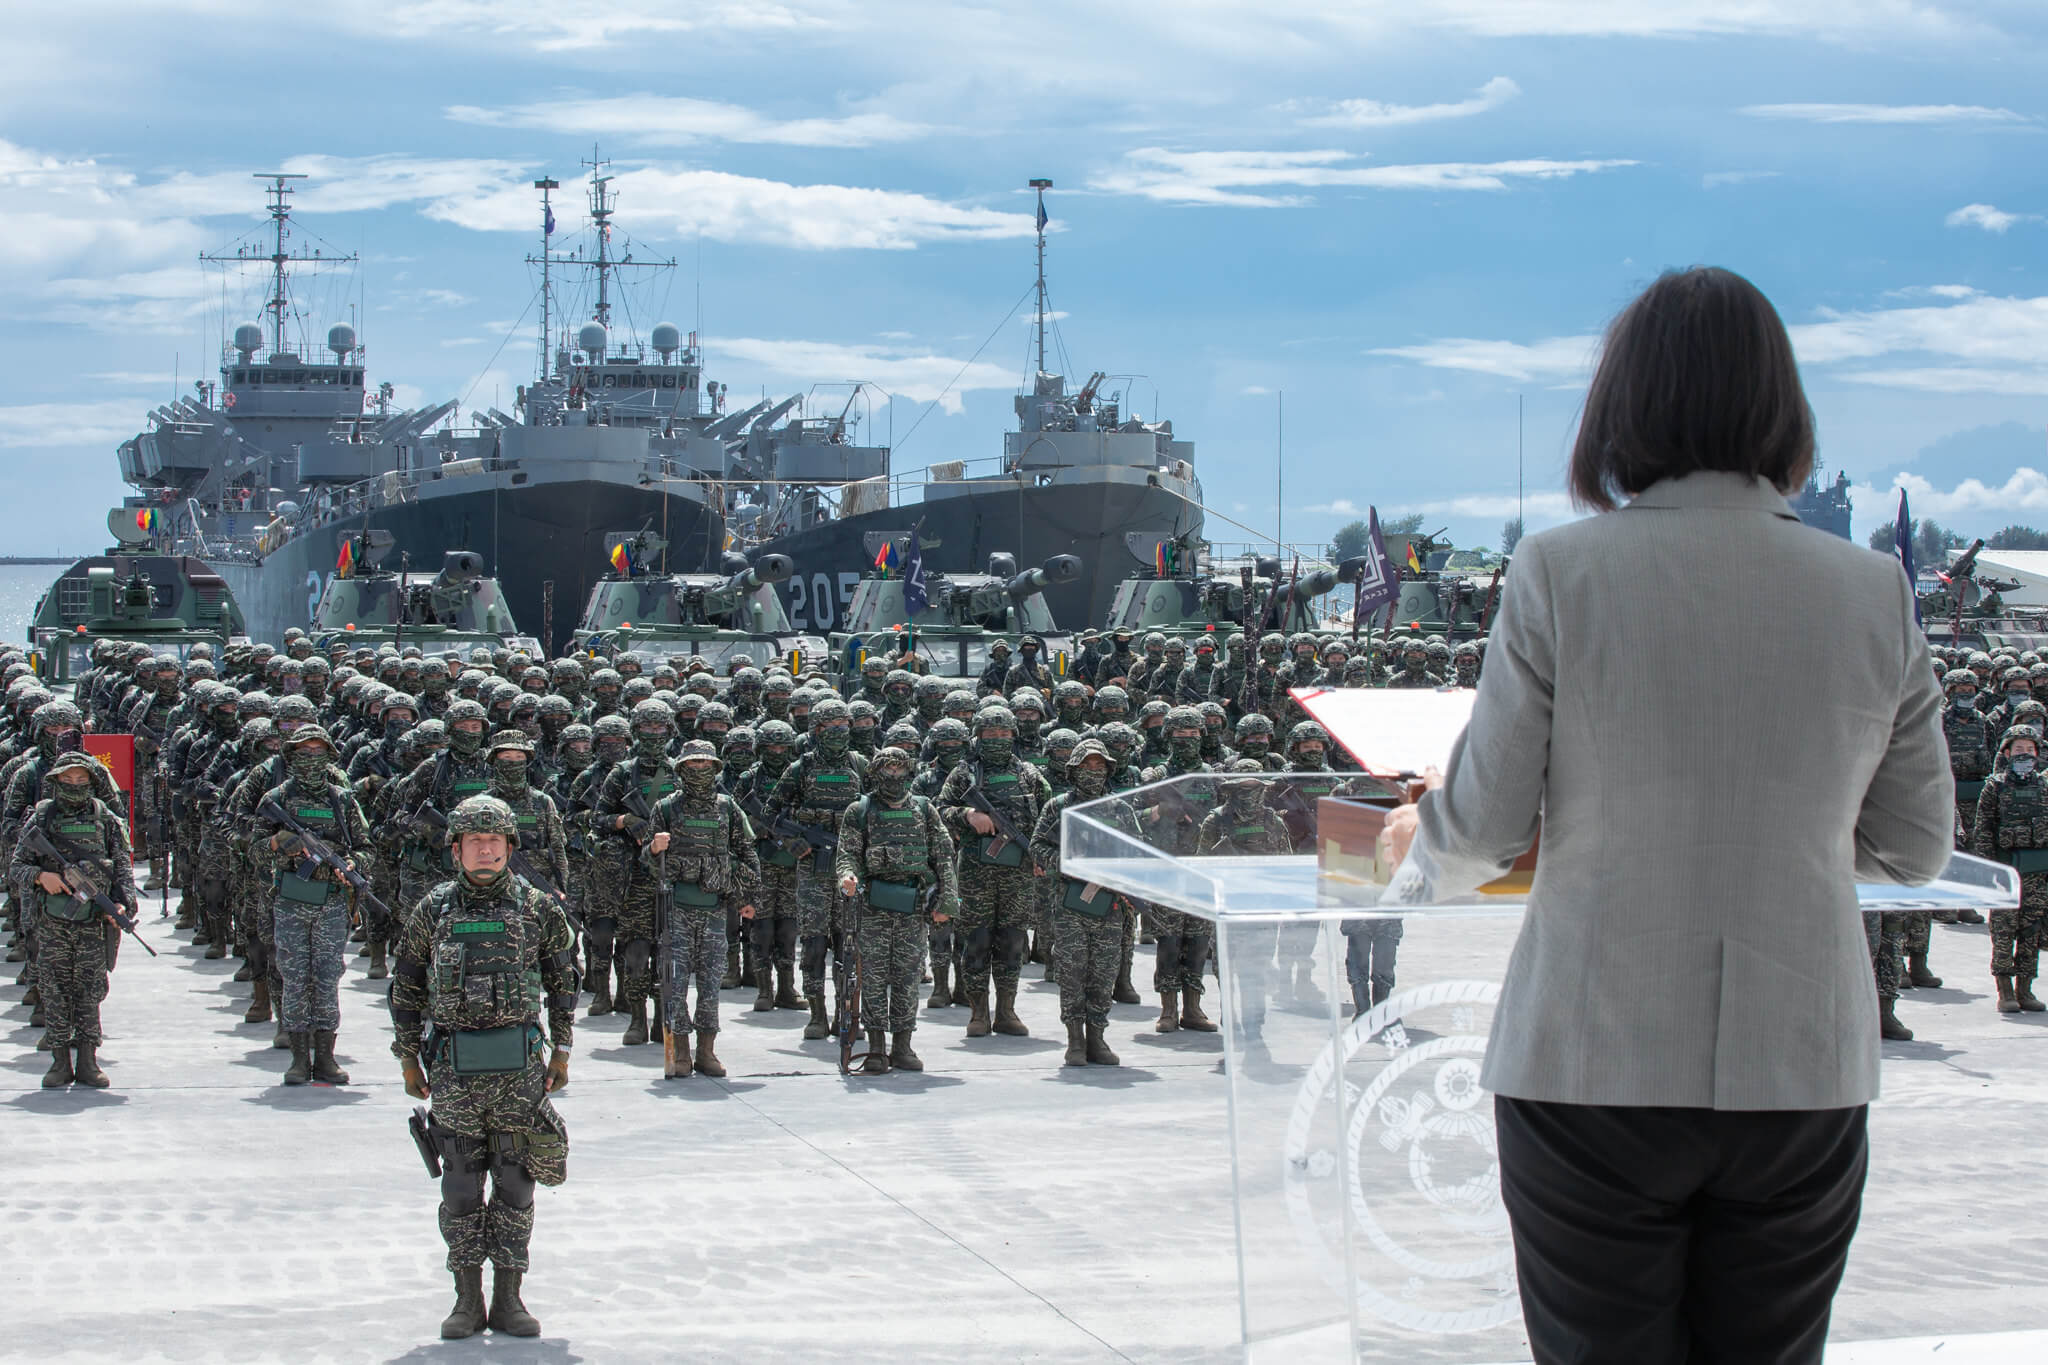 Taiwanská prezidenta v Kao-siungu a pěchota